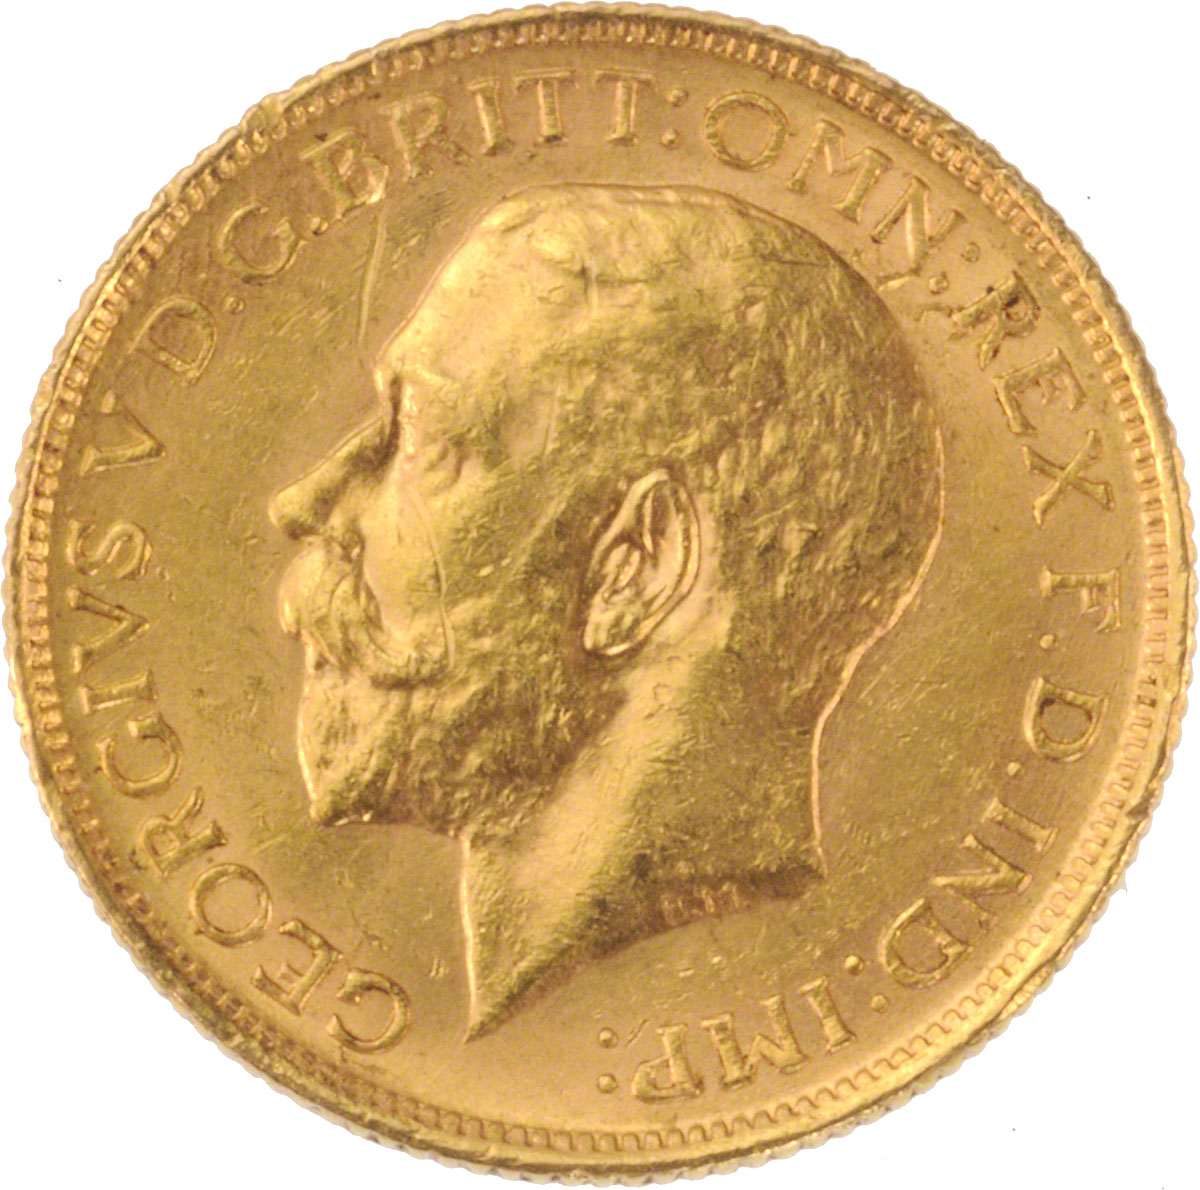 1918 Γεώργιος Ε’ (Νομισματοκοπείο Σίδνεϊ)